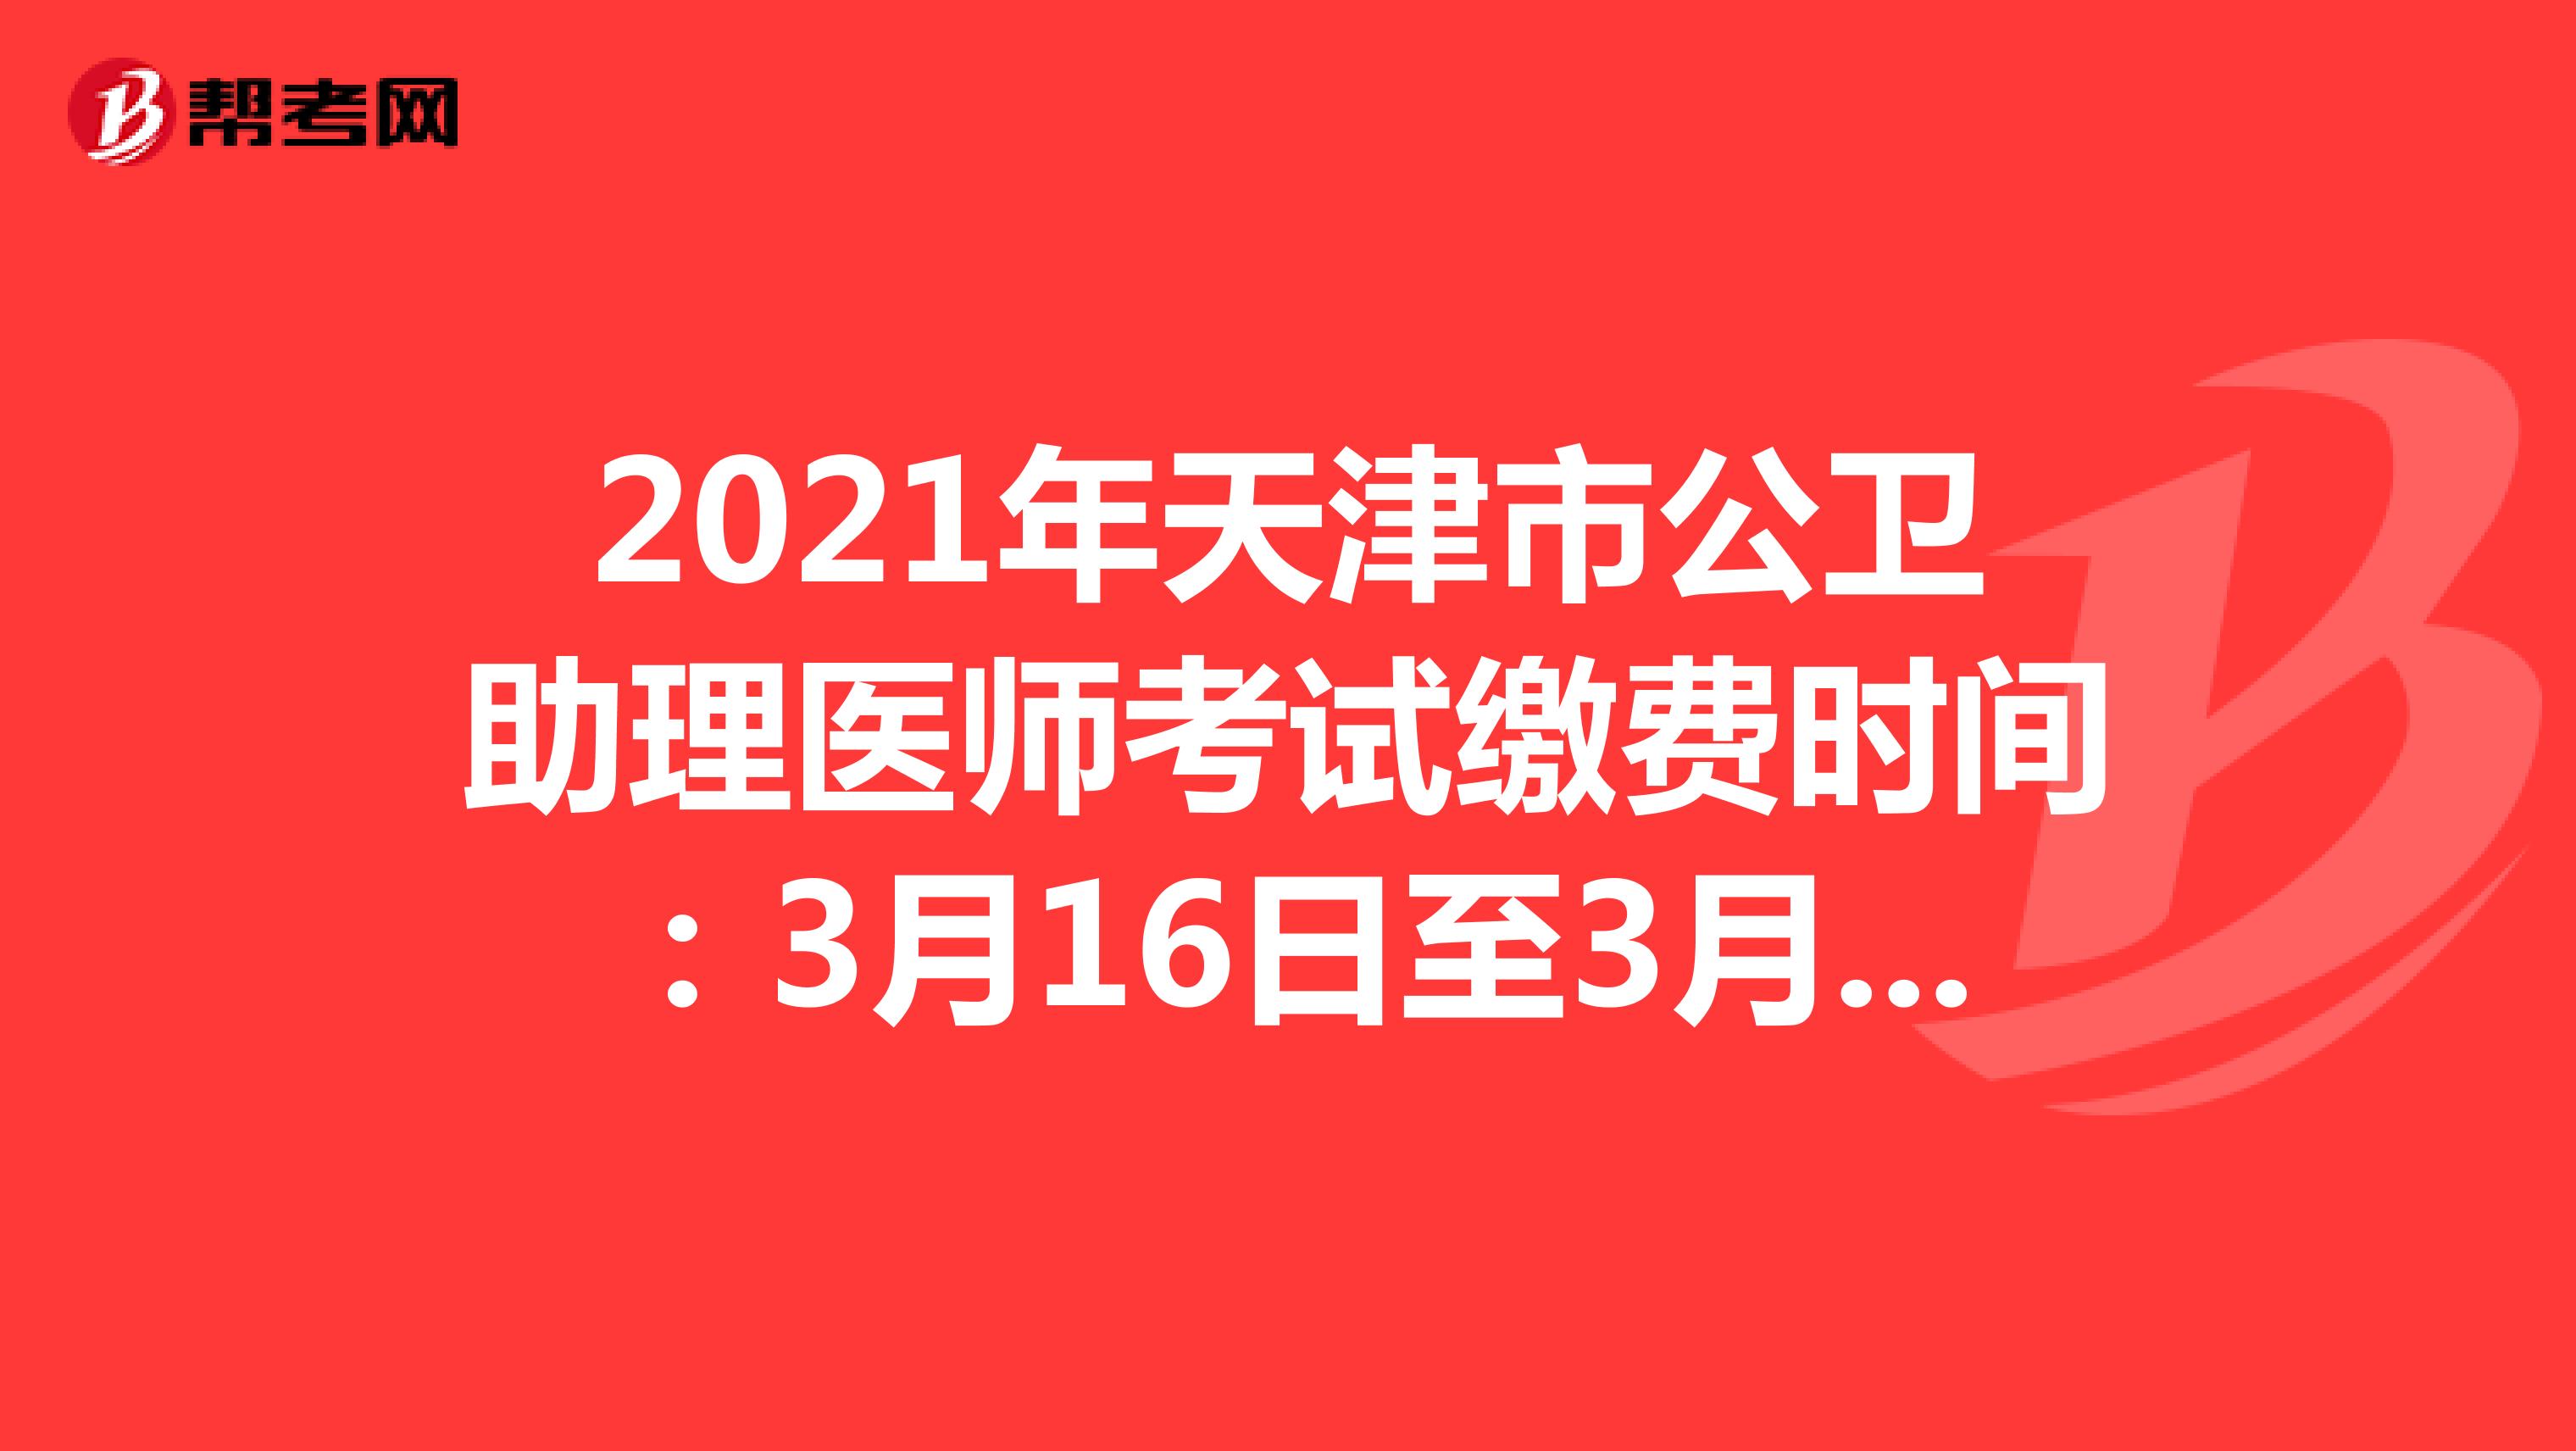 2021年天津市公卫助理医师考试缴费时间：3月16日至3月25日